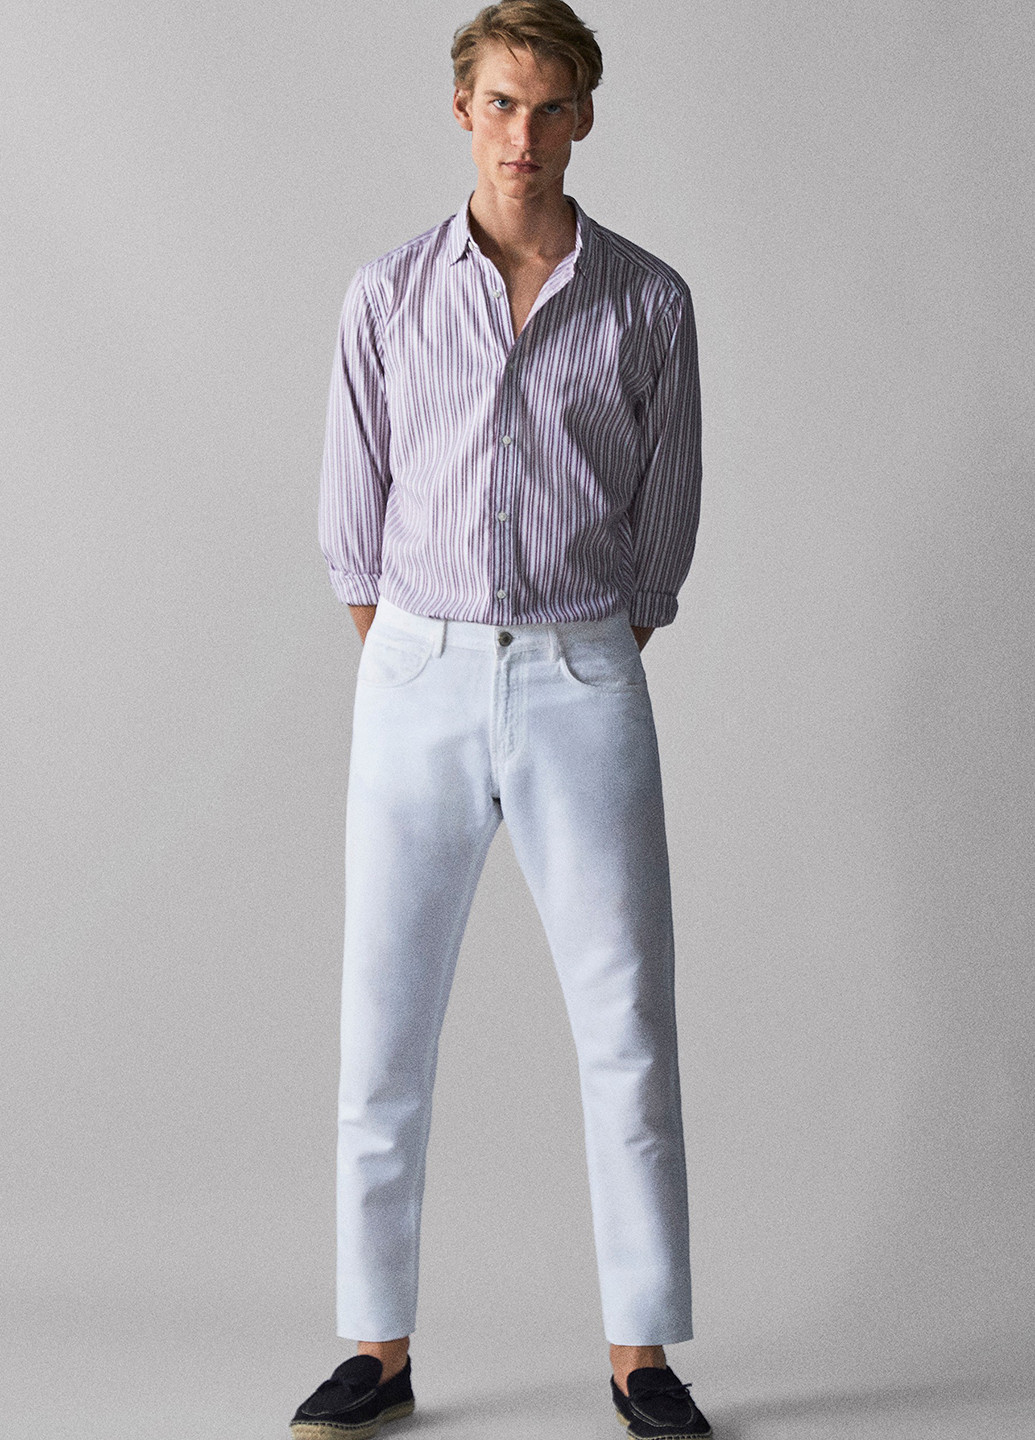 Фиолетовая кэжуал рубашка в полоску Massimo Dutti с длинным рукавом